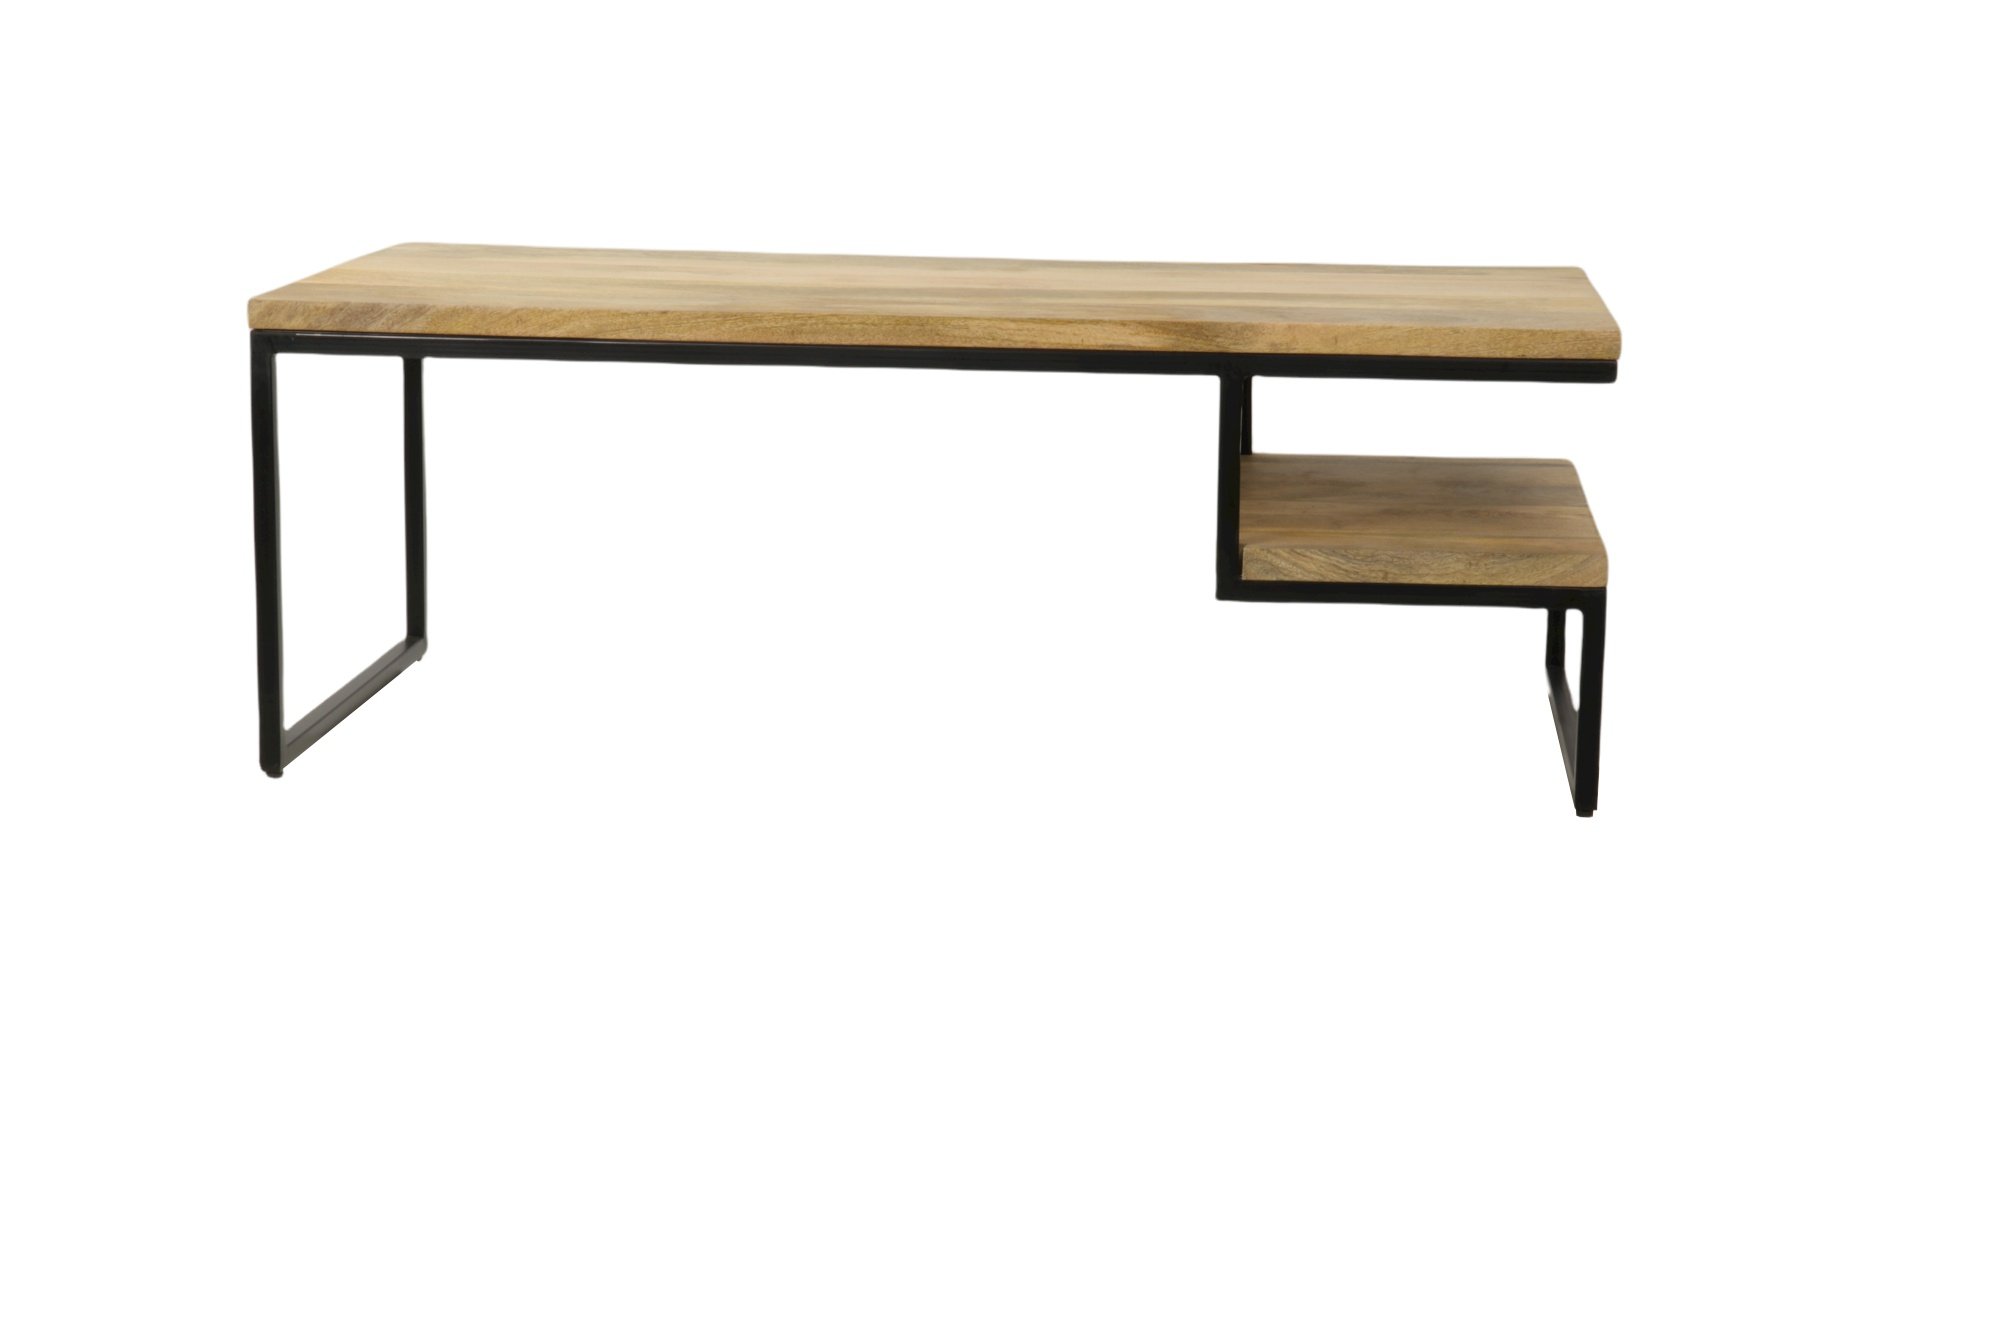 Table basse industrielle rectangulaire en bois et métal ALICE